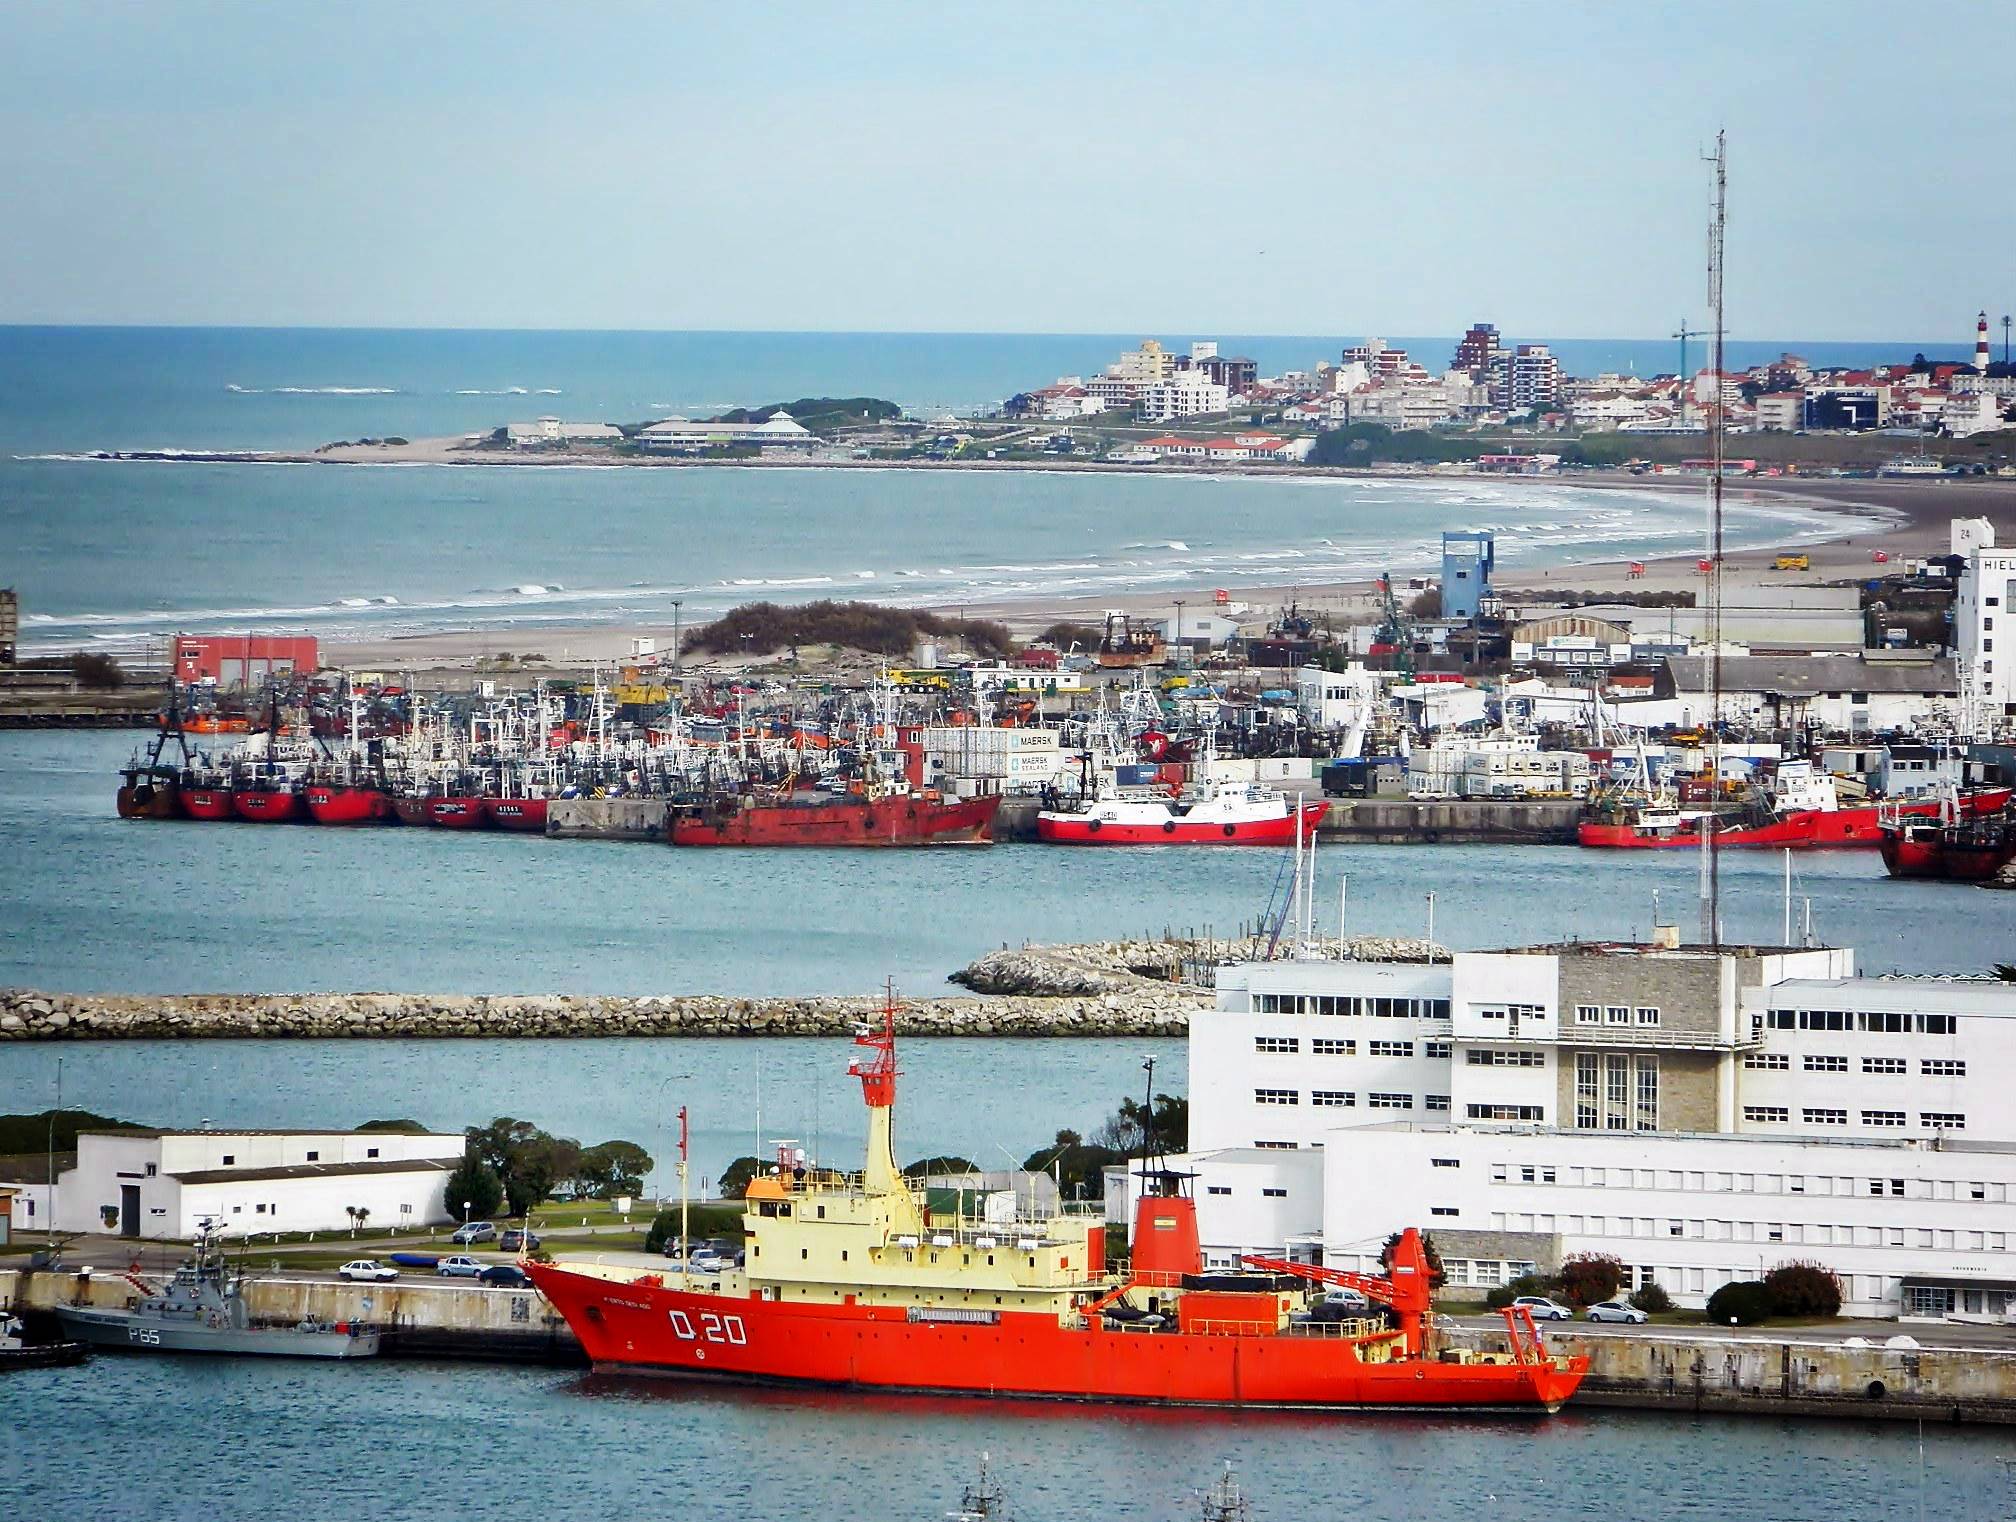 Astilleros comprometieron asistencia técnica para adecuar el varadero de la Base Naval Mar del Plata